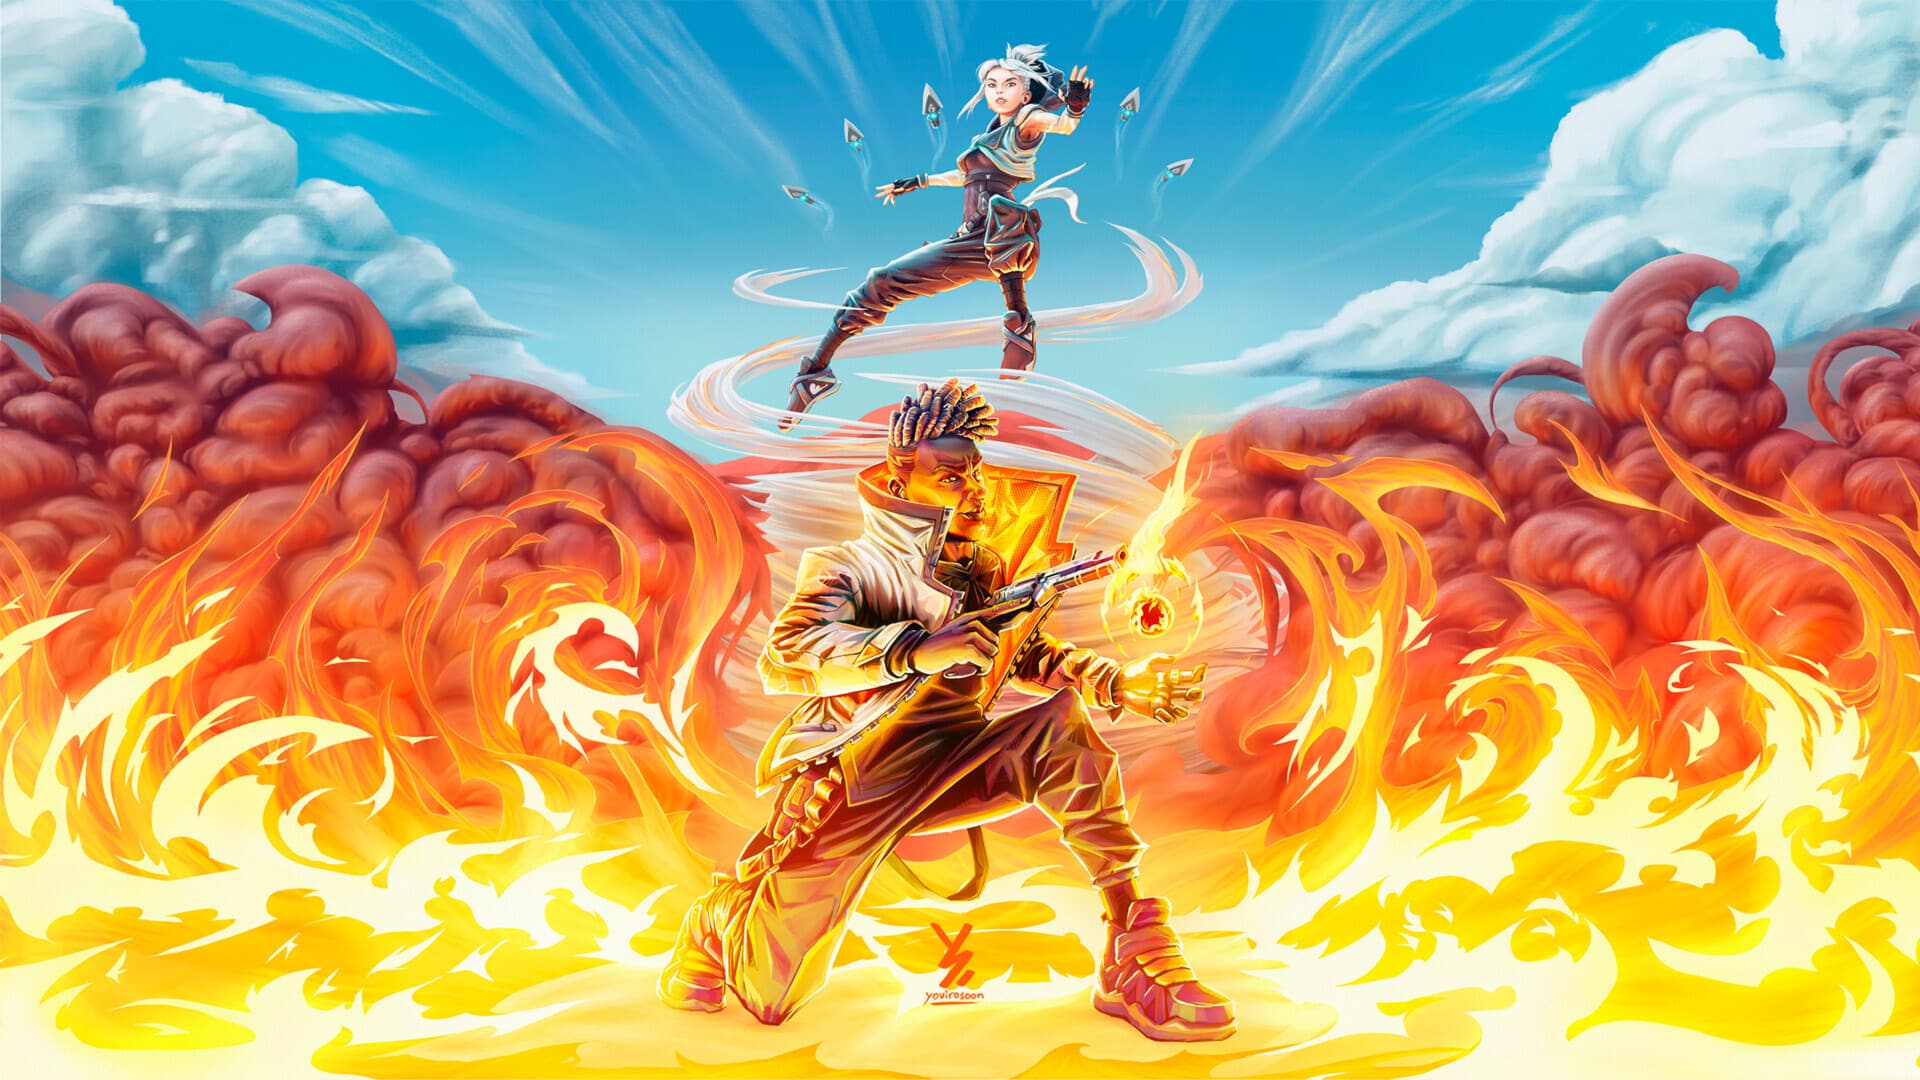 Valorant wallpaper Image by yovirosoon – Jett and Phoenix in a battle of Wind vs. Fire.